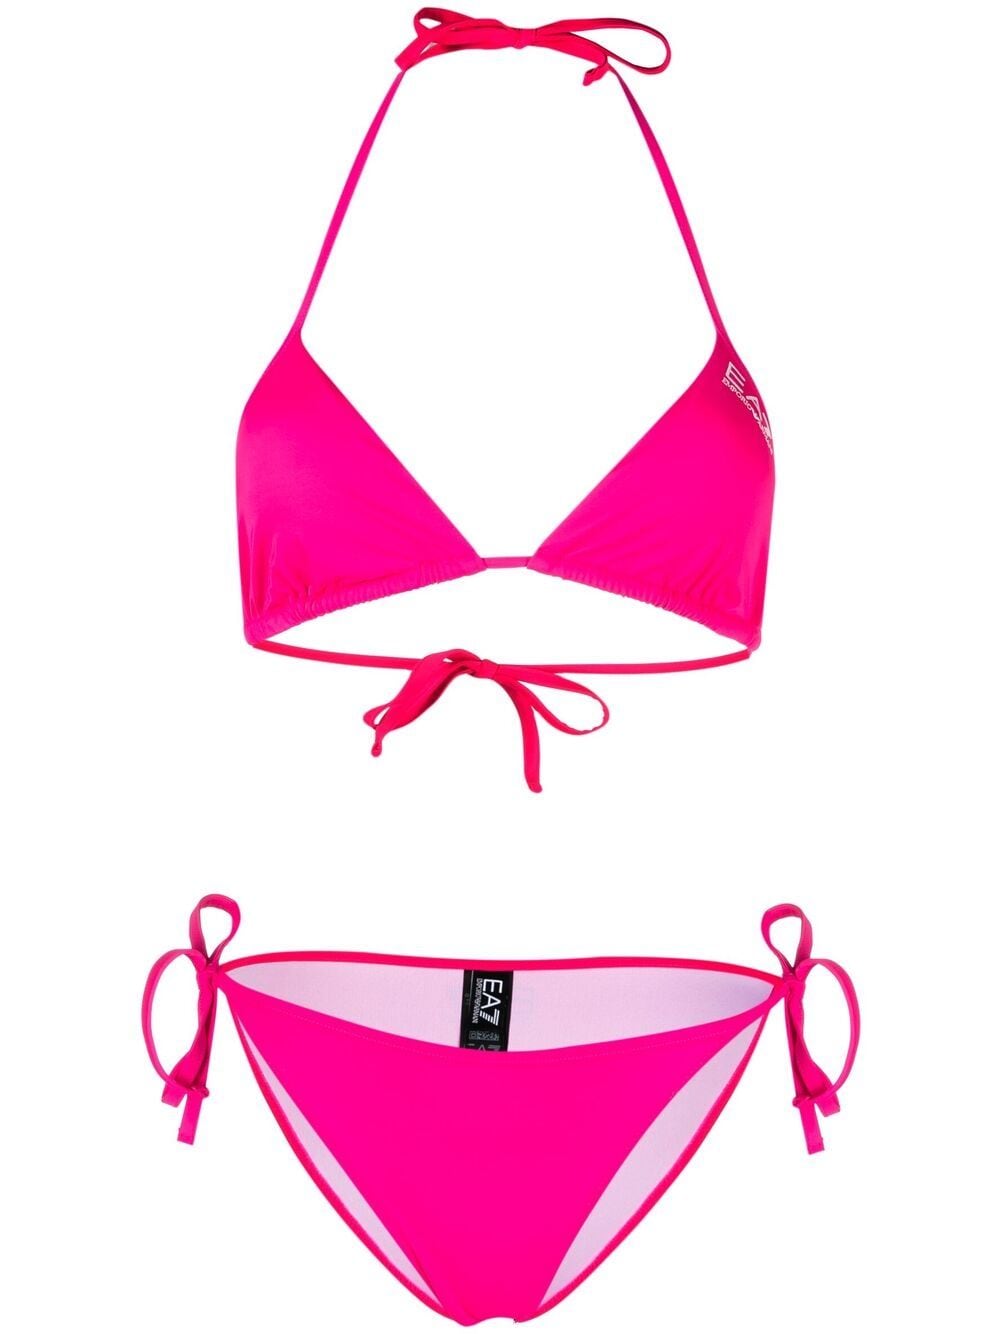 Ea7 Emporio Armani plain tringle-cup bikini - Pink von Ea7 Emporio Armani